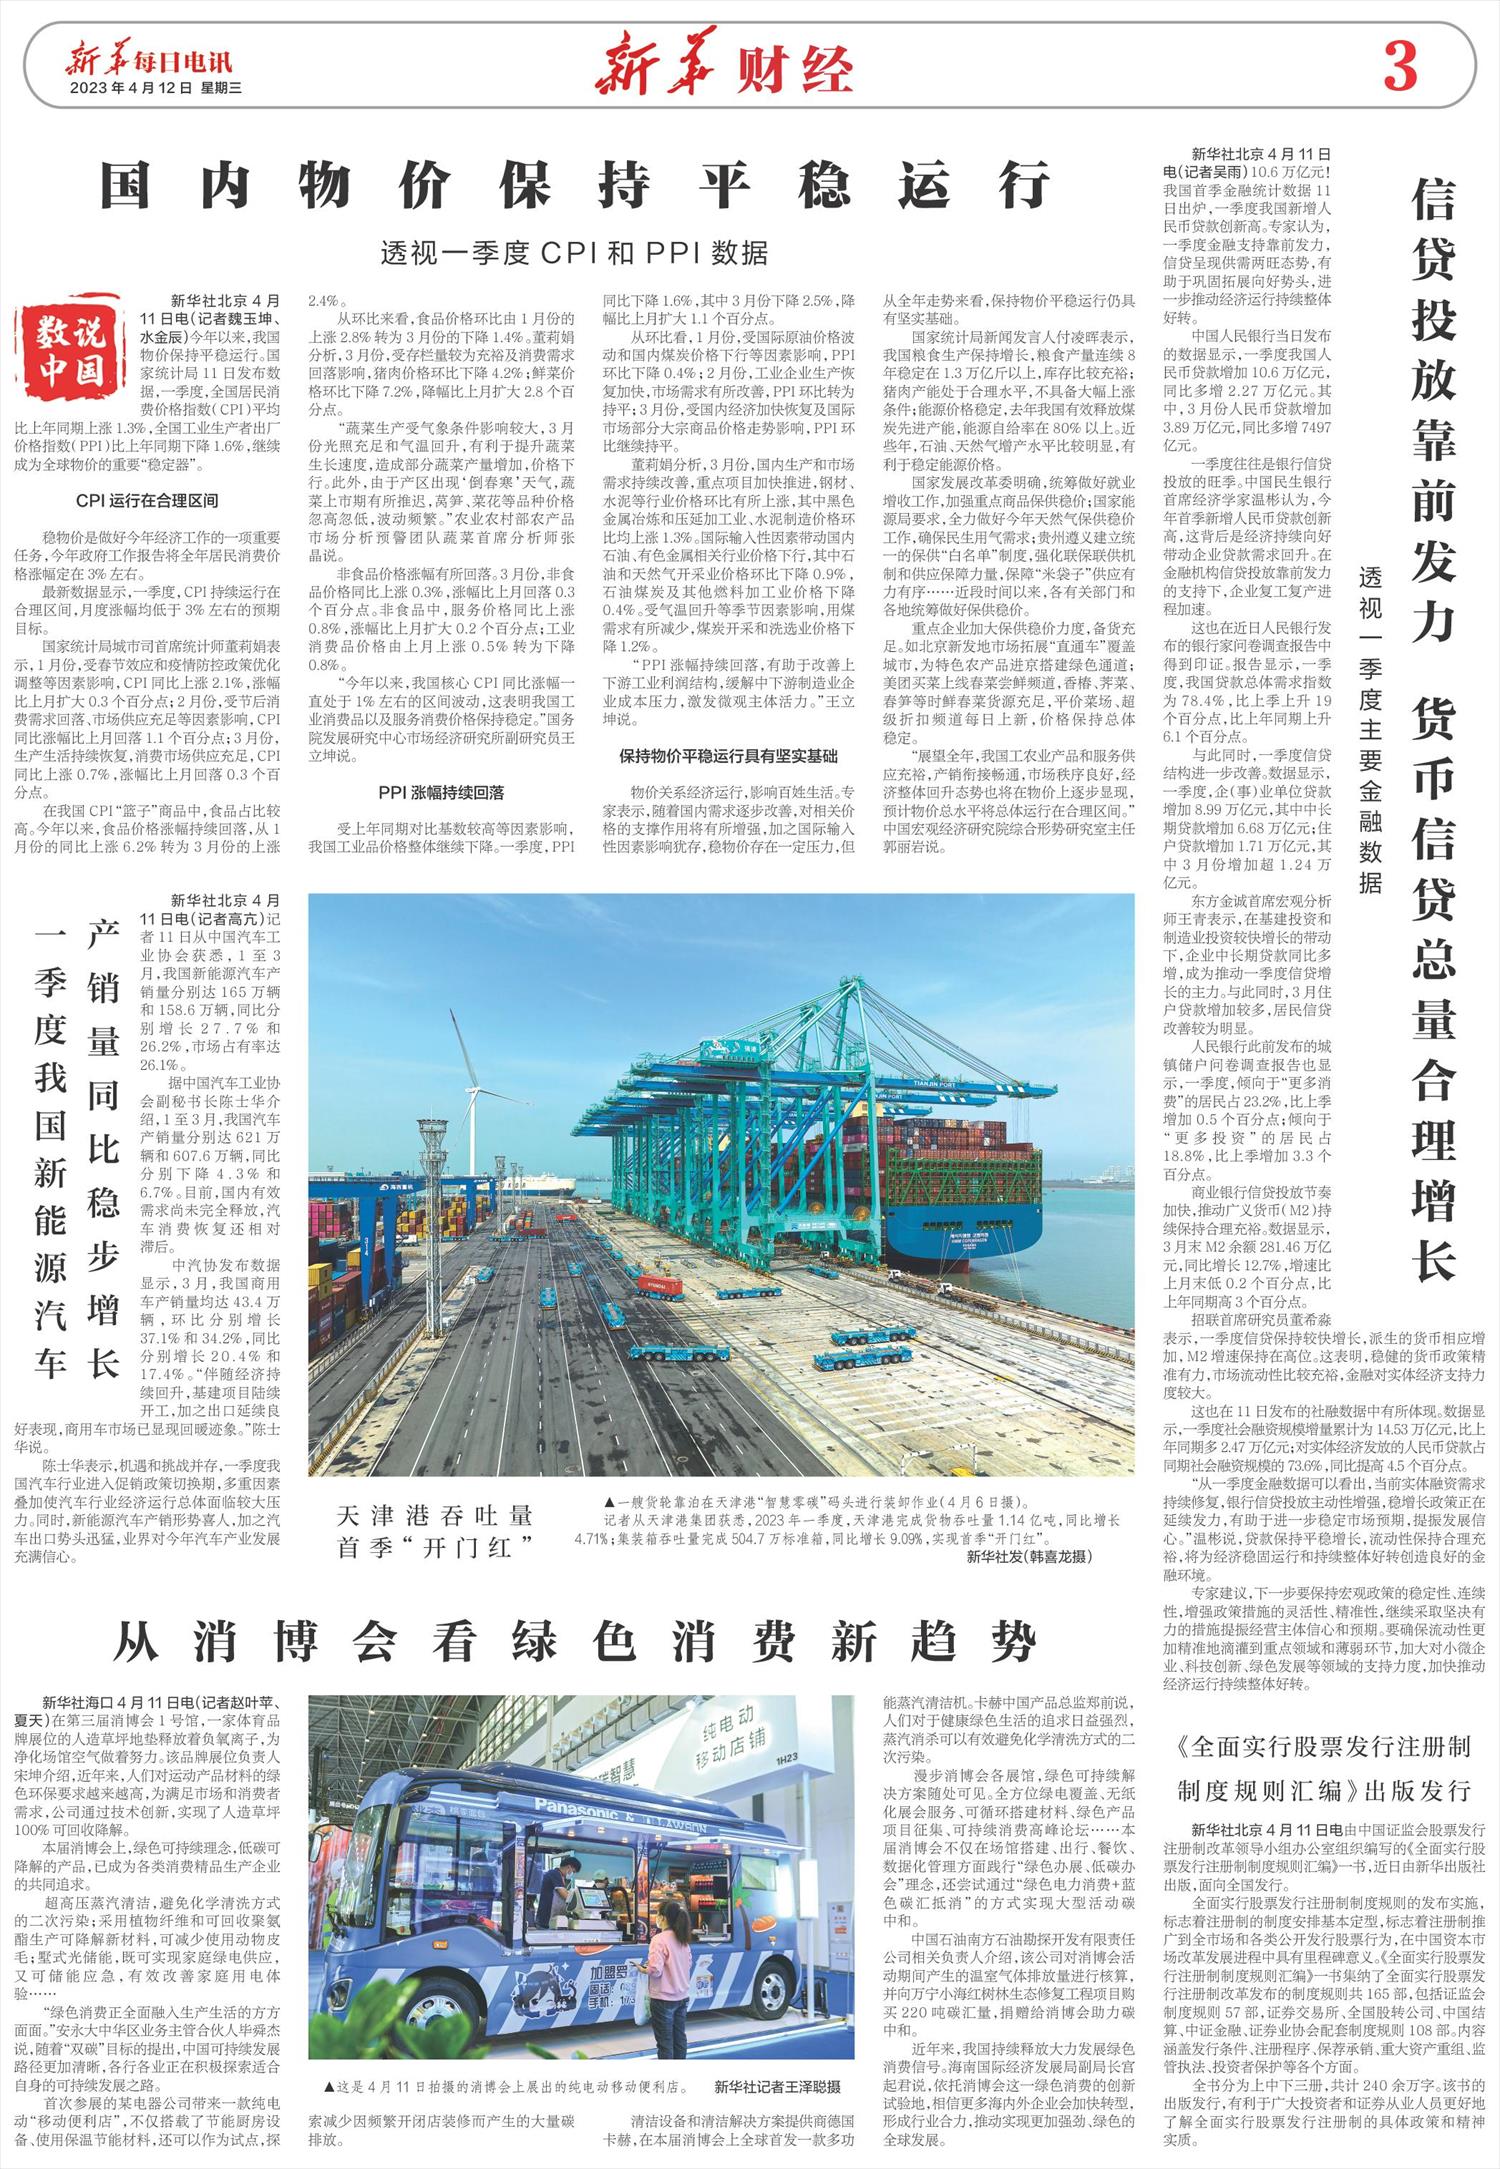 新华每日电讯-微报纸-2023年04月12日